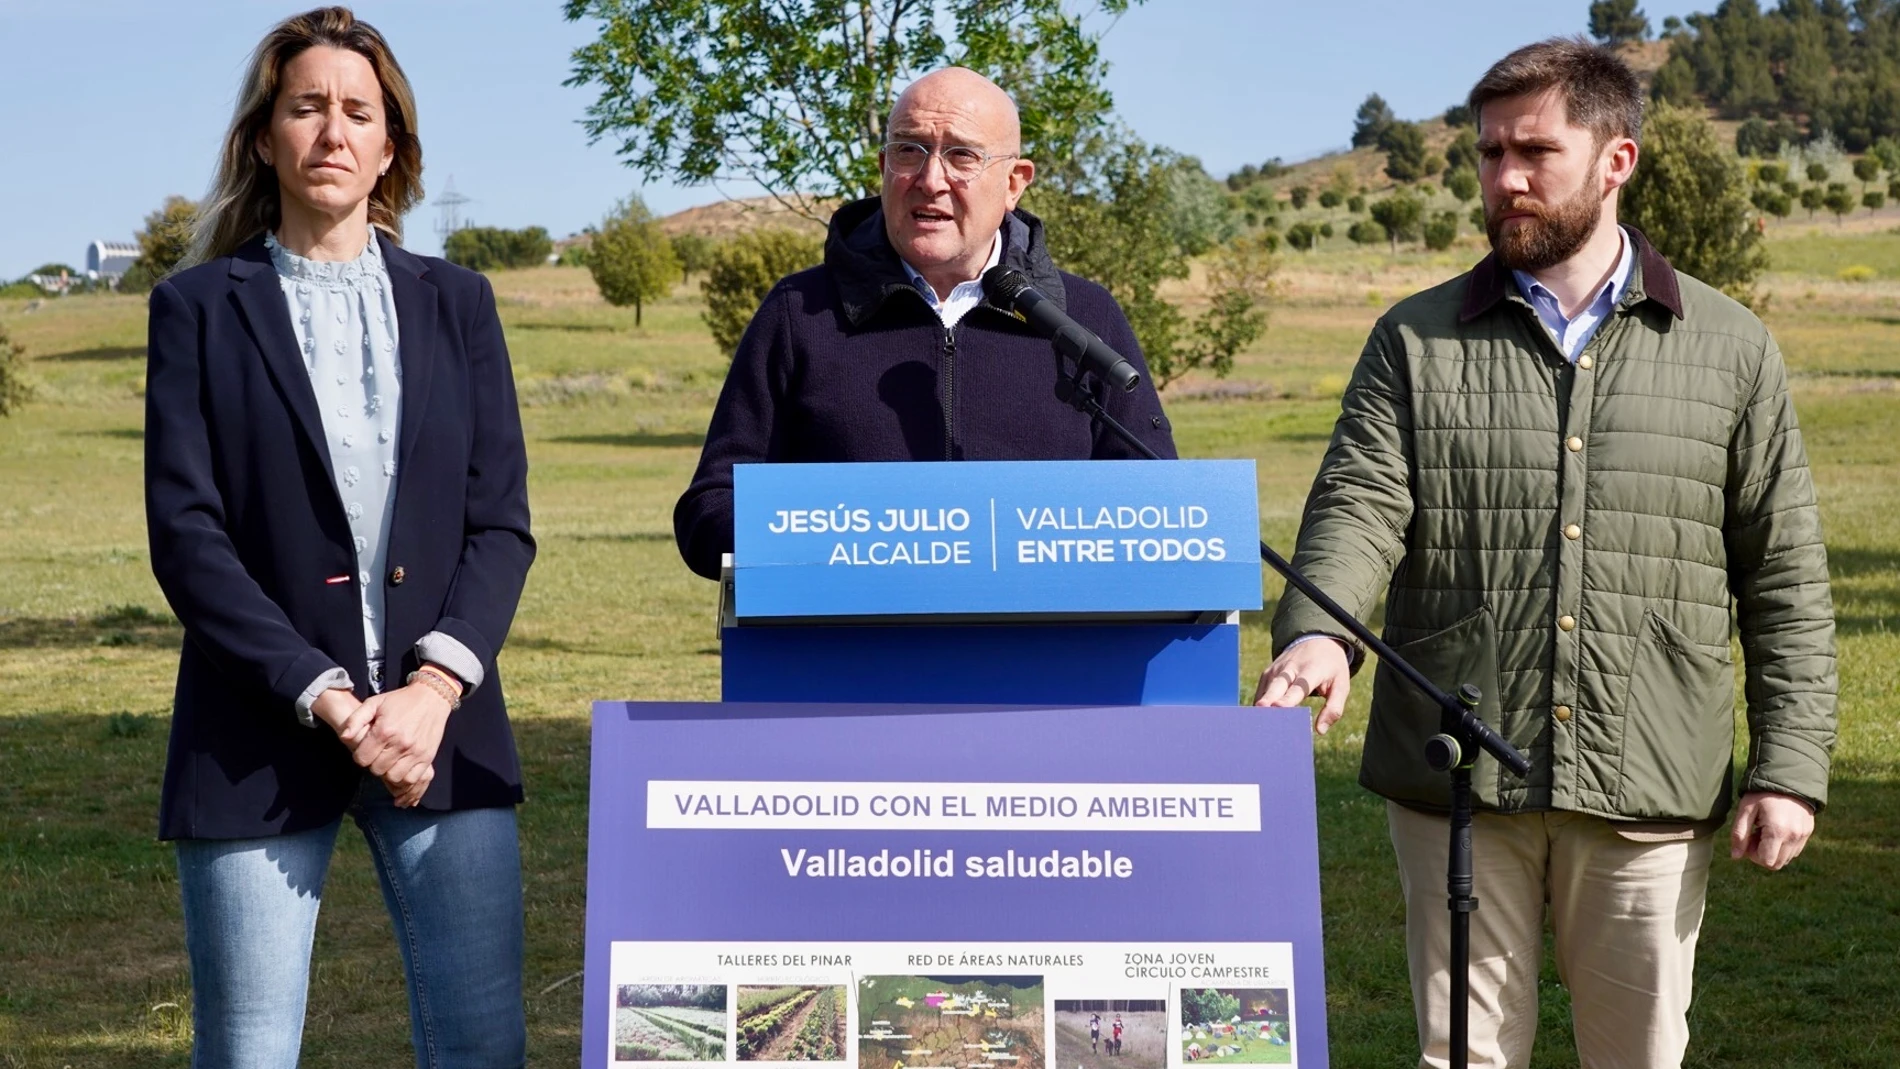 El candidato del PP al Ayuntamiento de Valladolid, Jesús Julio Carnero presenta las propuestas del programa electoral de Valladolid con el medio ambiente